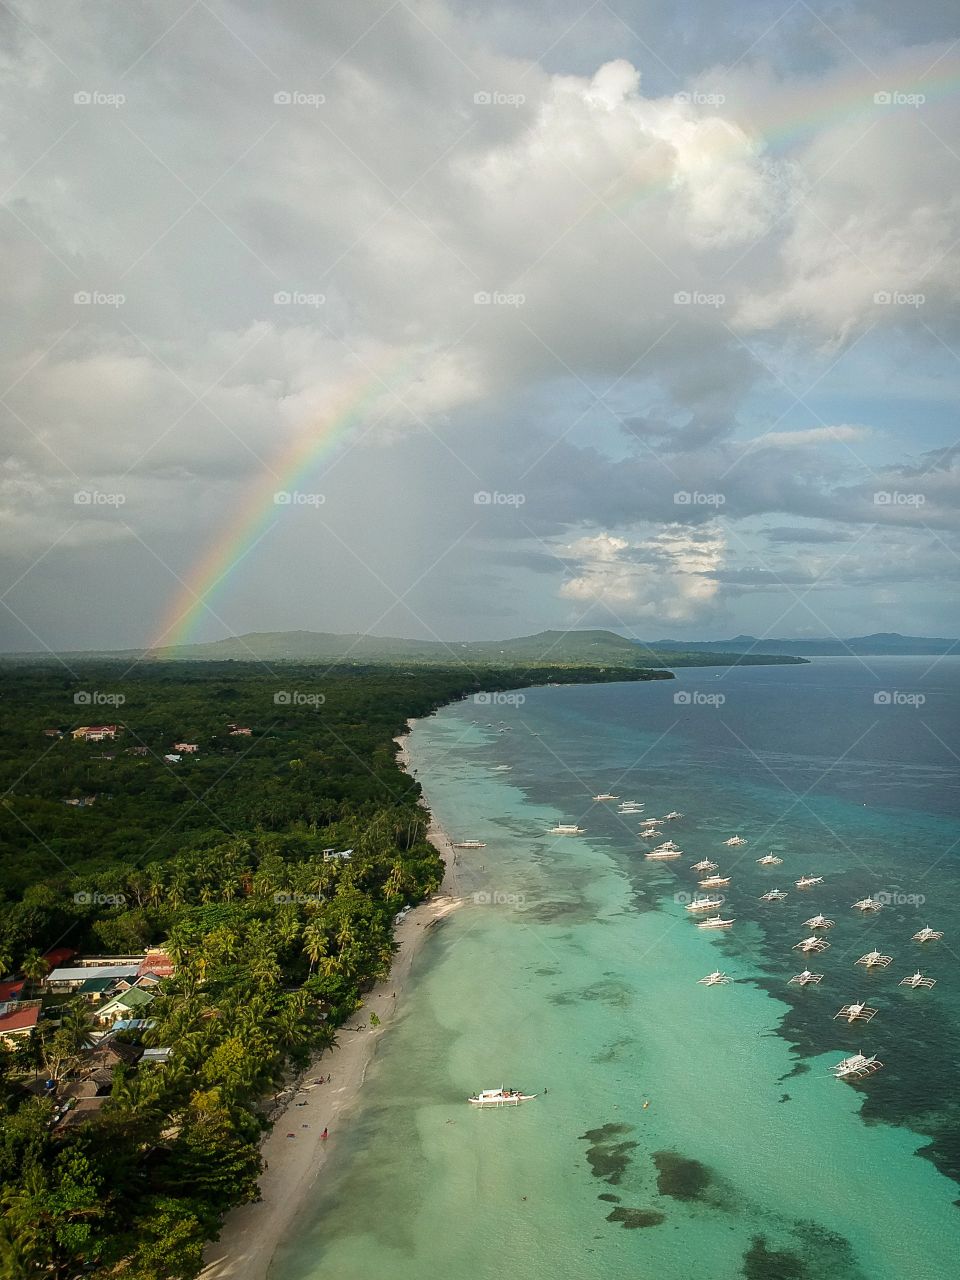 Rainbow over paradise